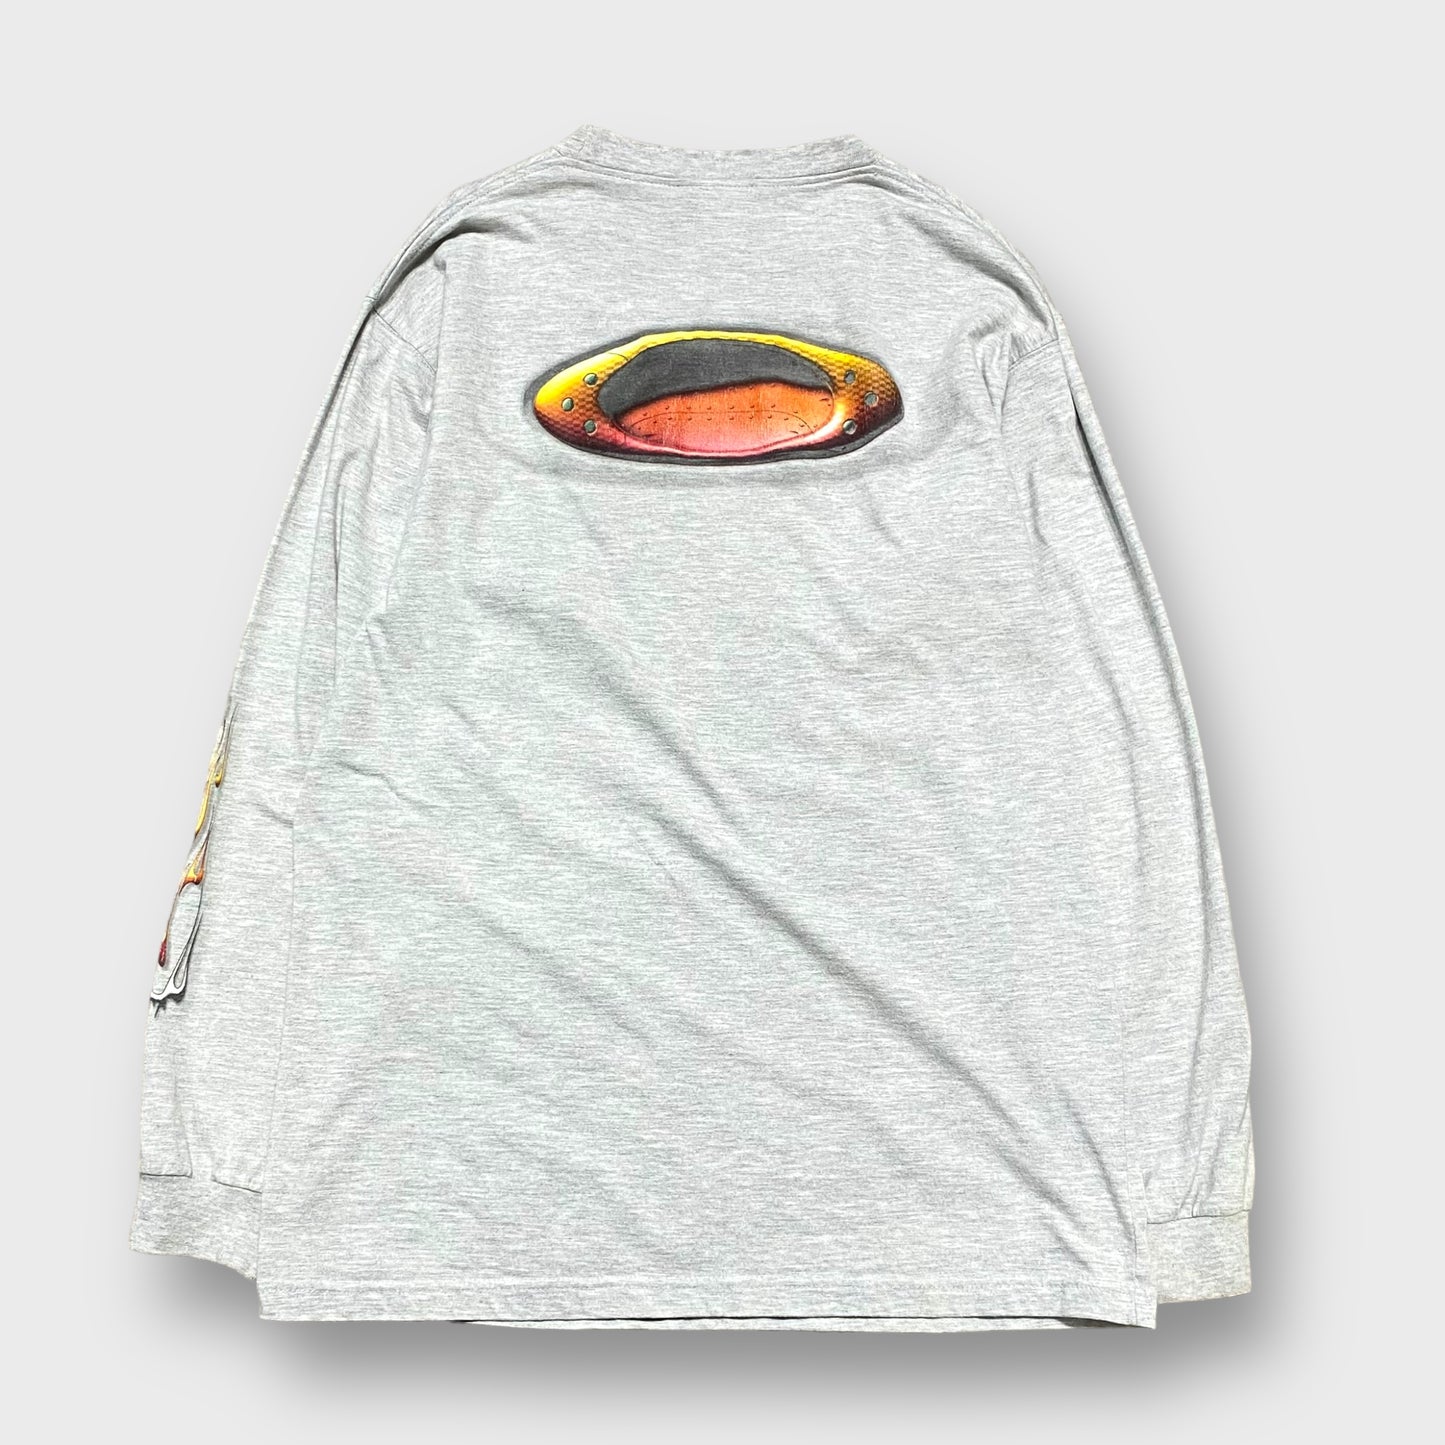 90-00's "OAKLEY" Ikon design l/s t-shirt